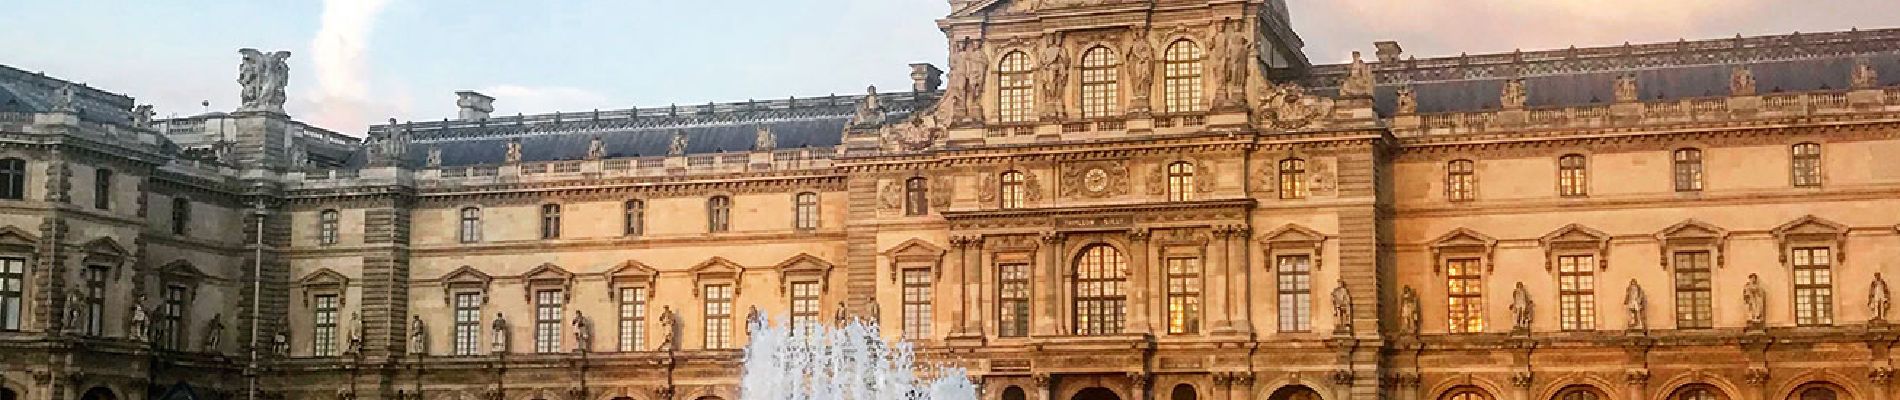 POI Parijs - Musée du Louvre - Photo